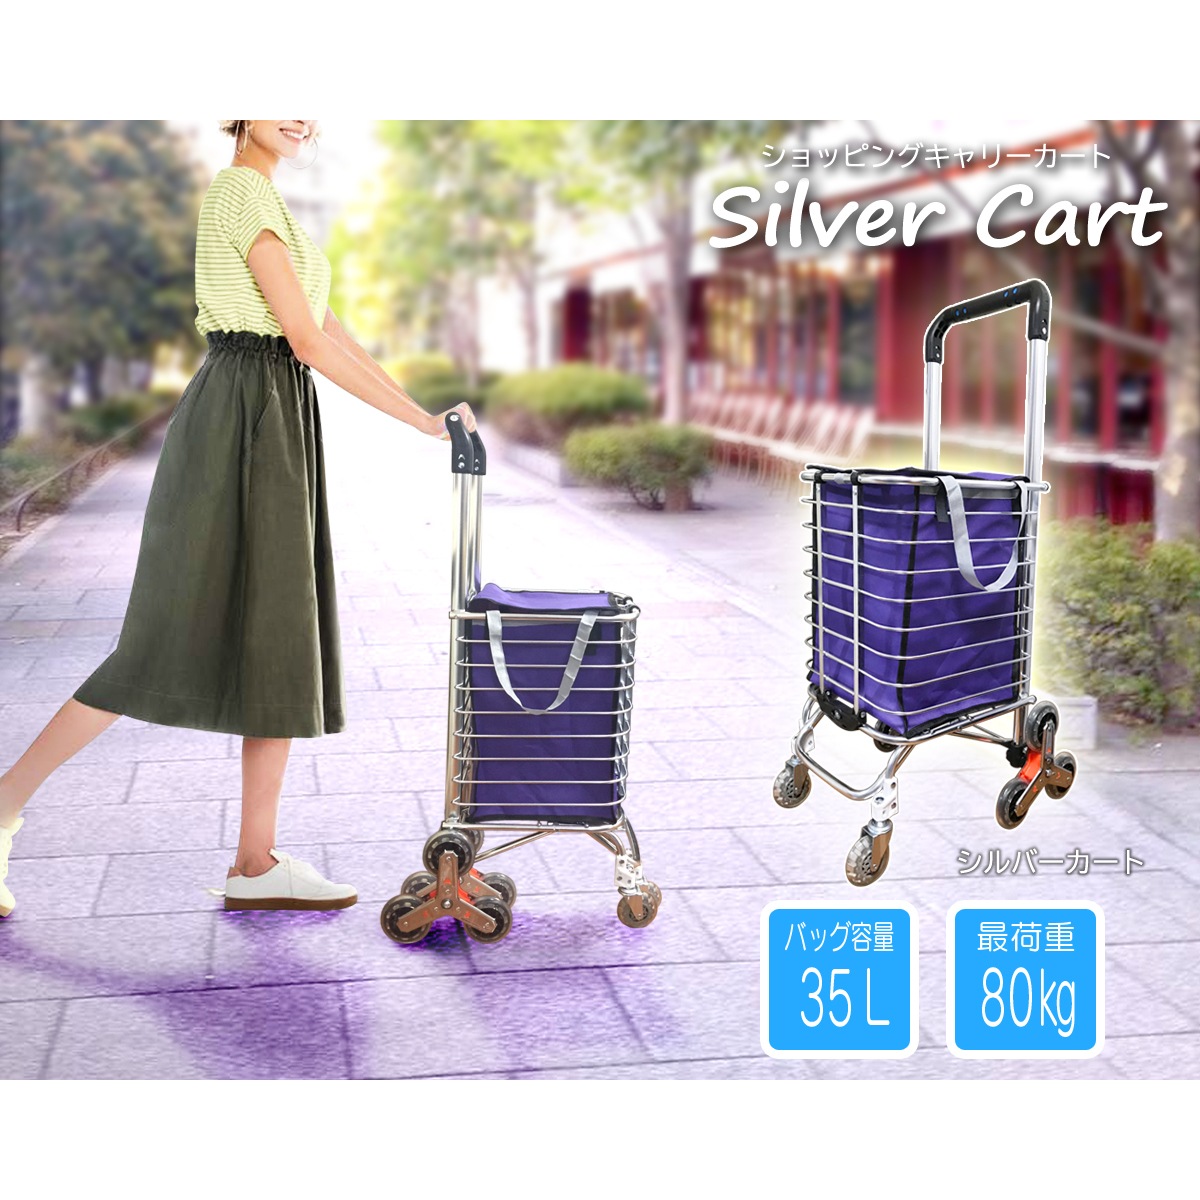 [Qoo10] ショッピングカート 折りたたみ式 買い物 : アウトドア